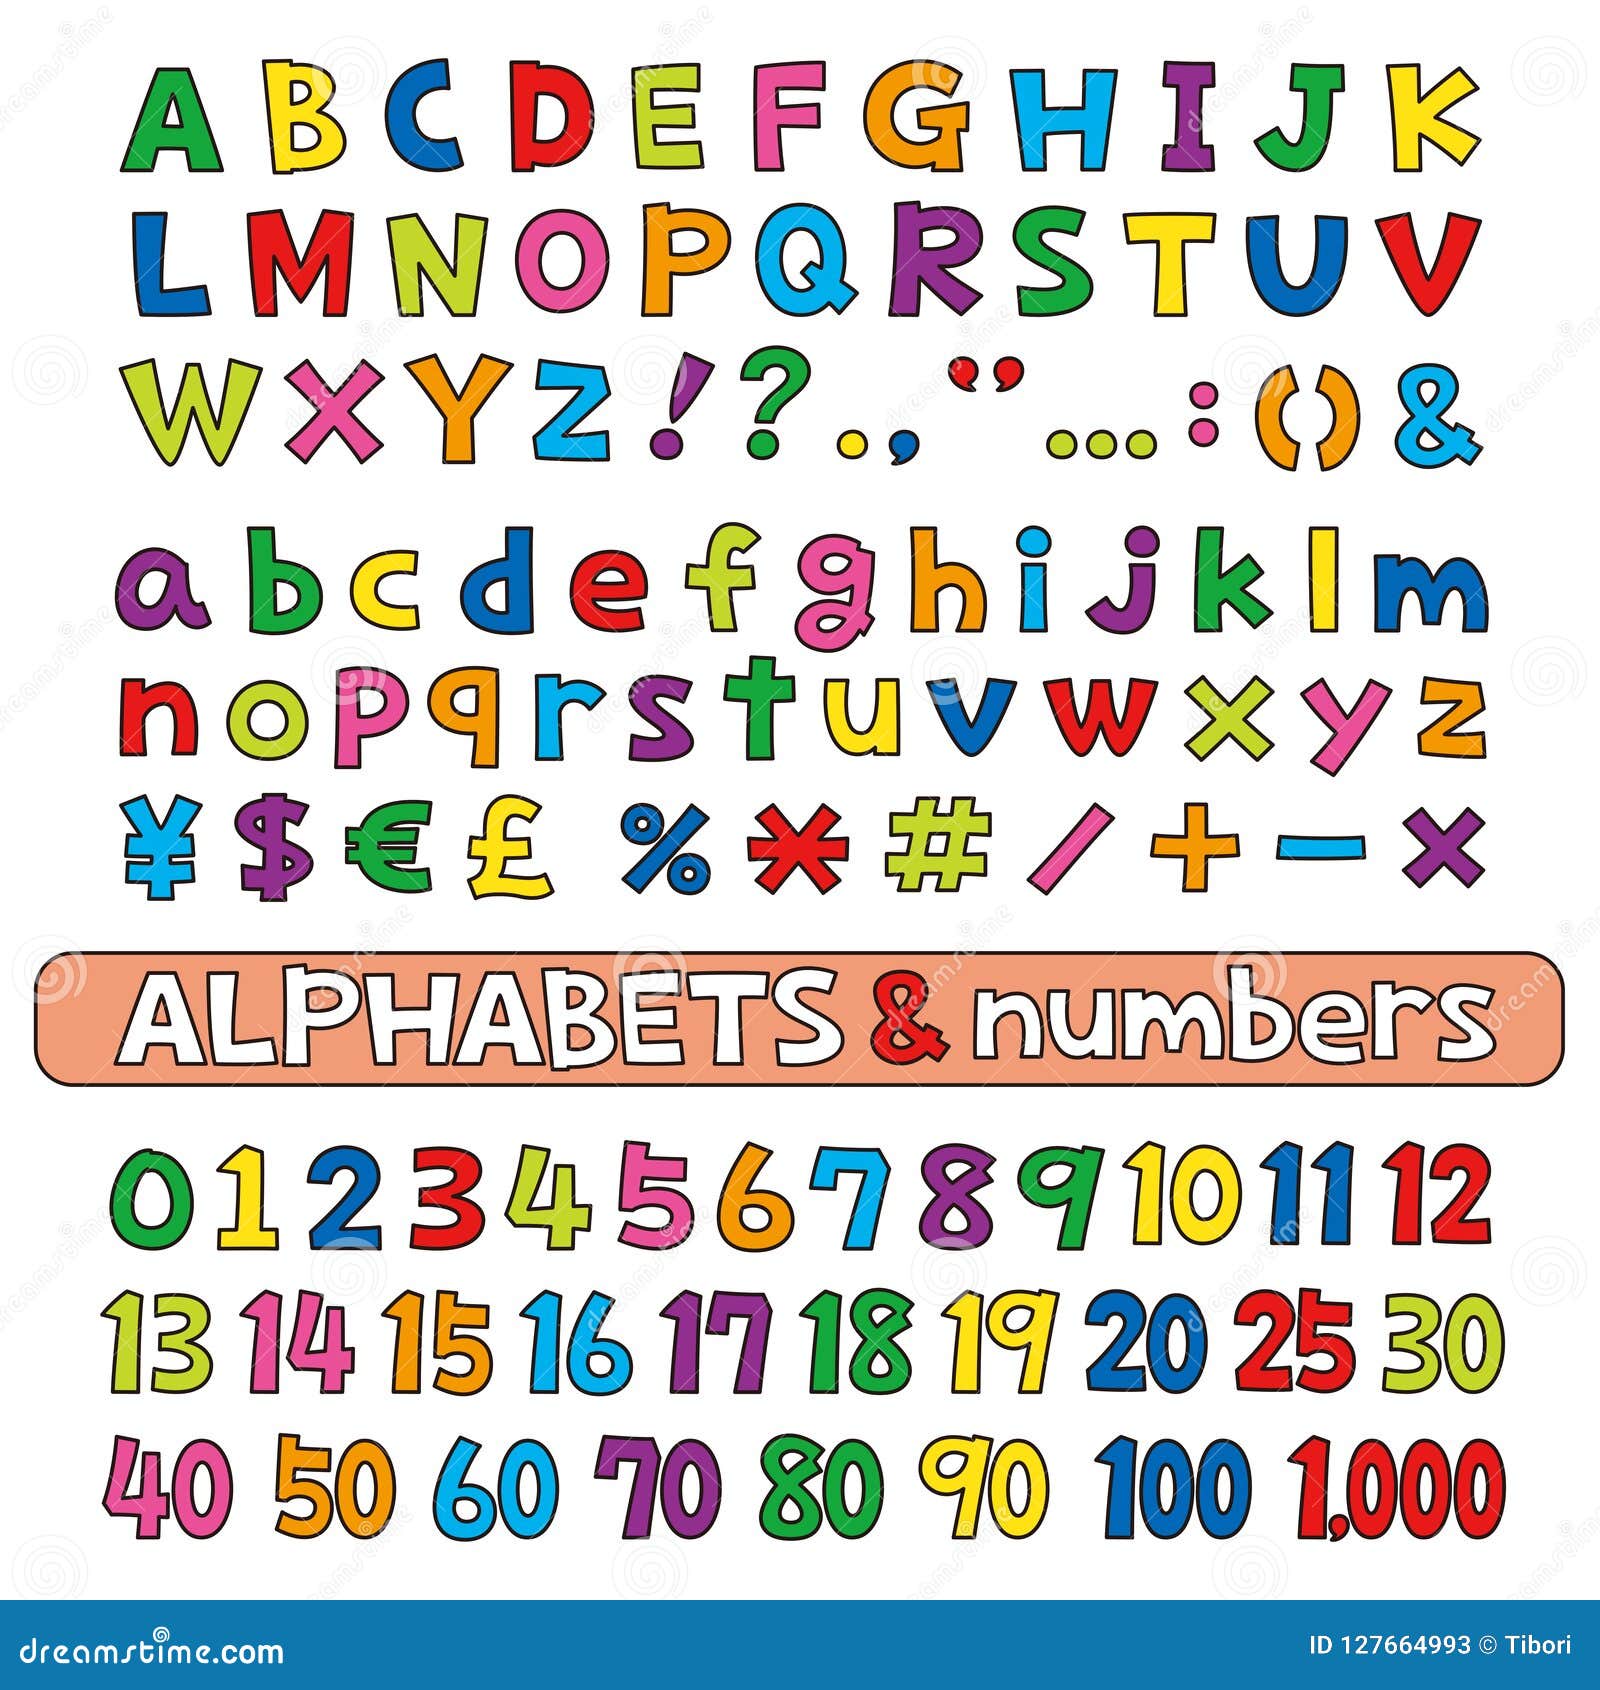 Alphabet numbers